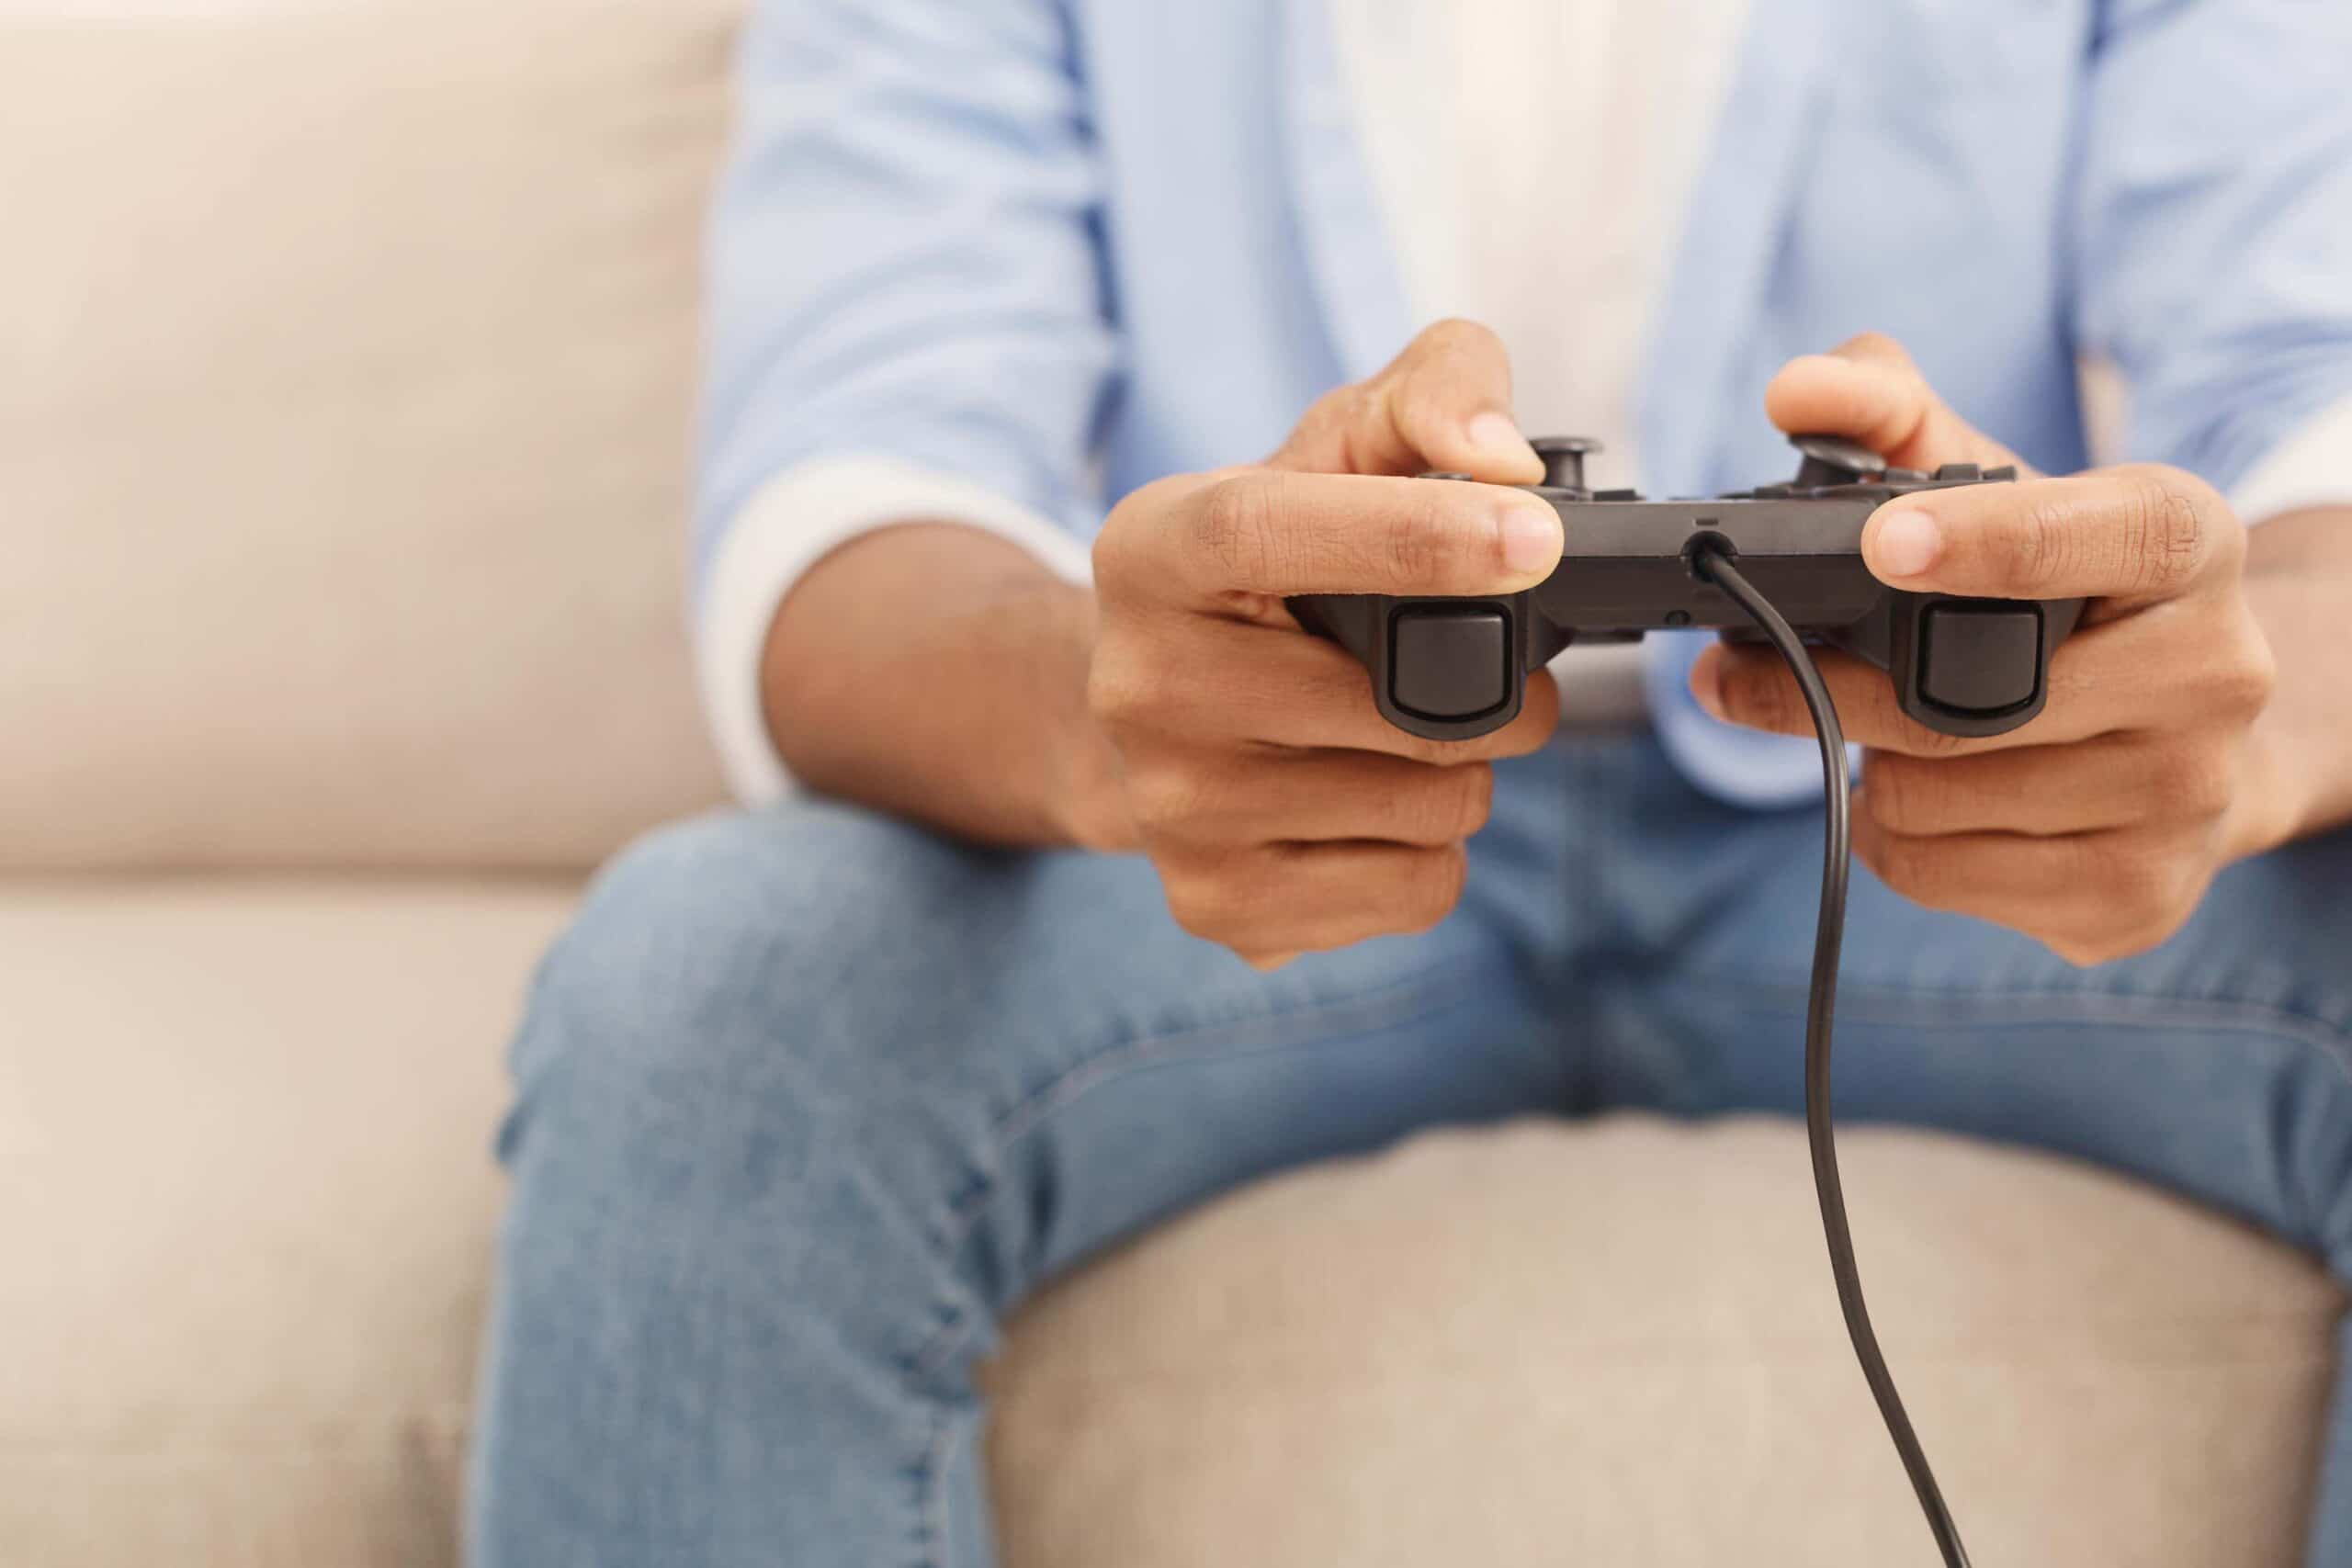 9 Ways Parents Can Make Online Gaming Safer For Children